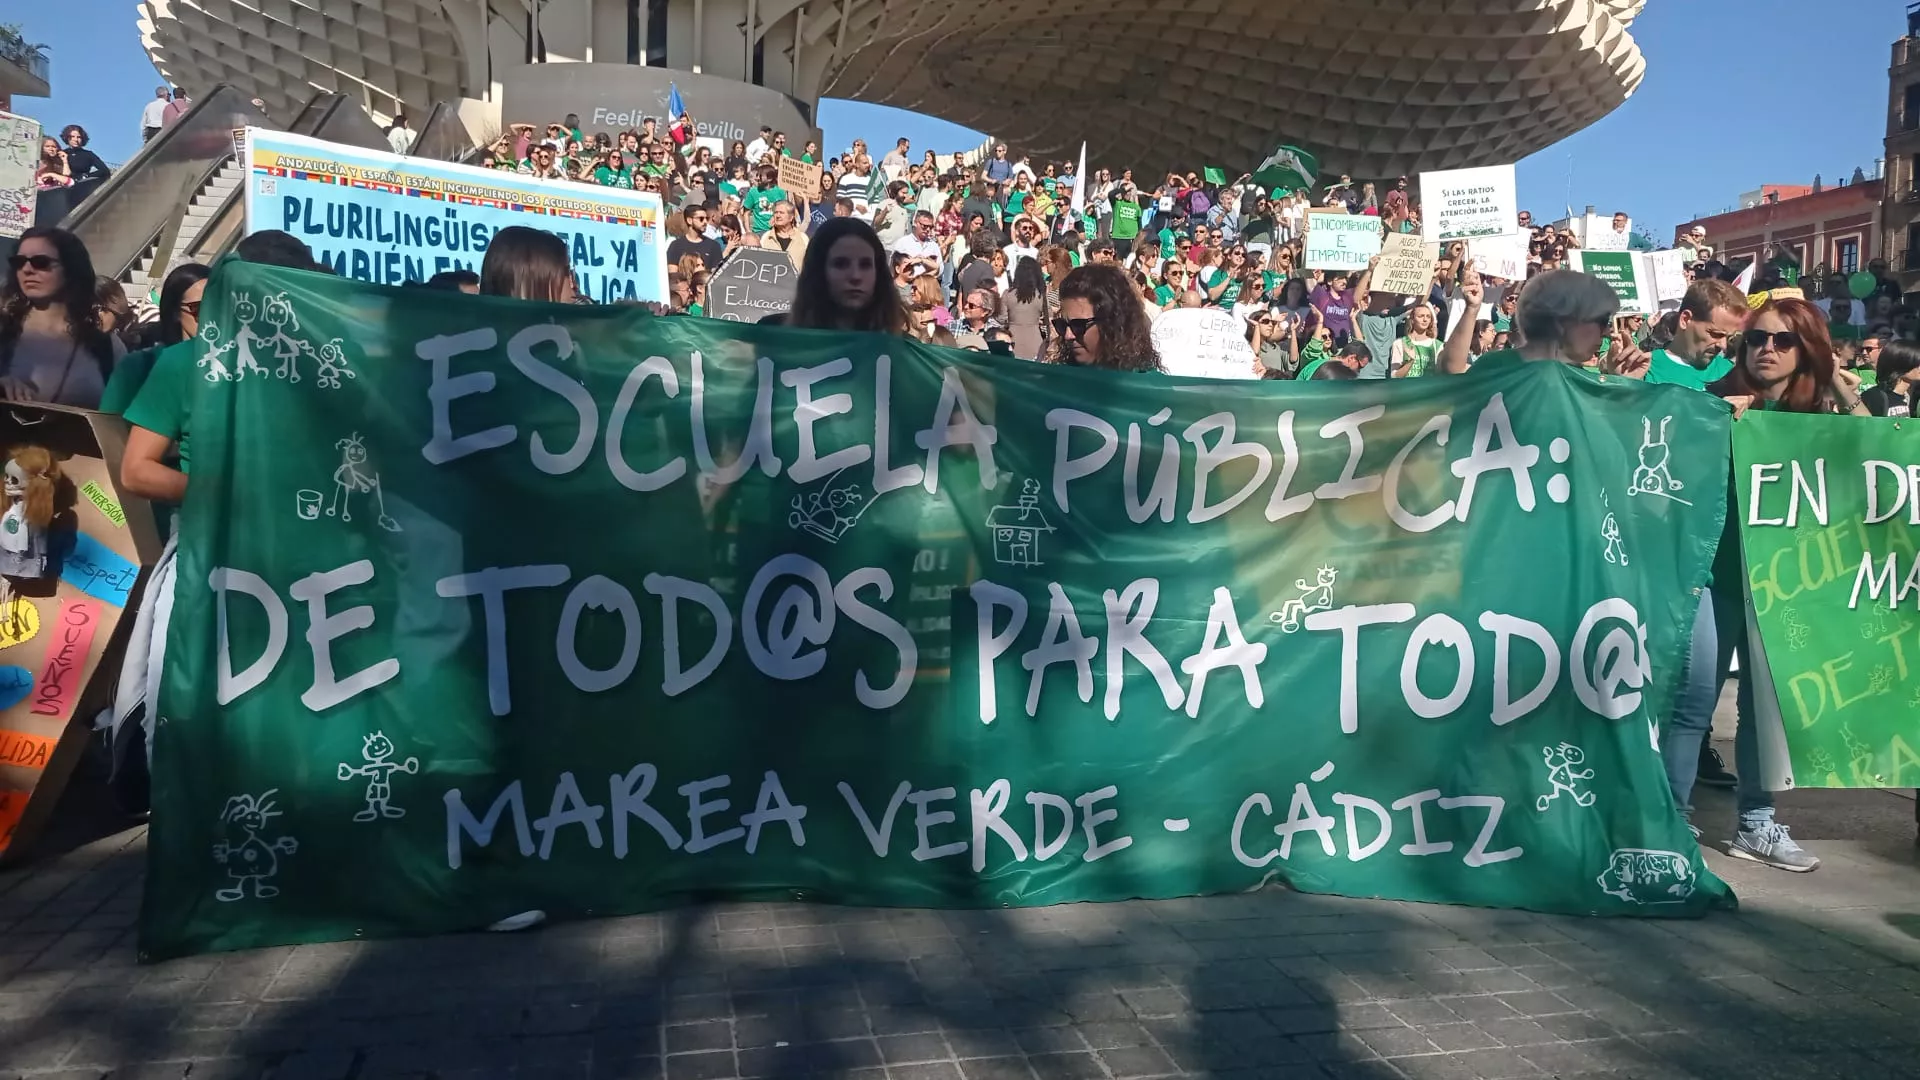 La Marea Verde gaditana presente en la manifestación en Sevilla por la educación pública.